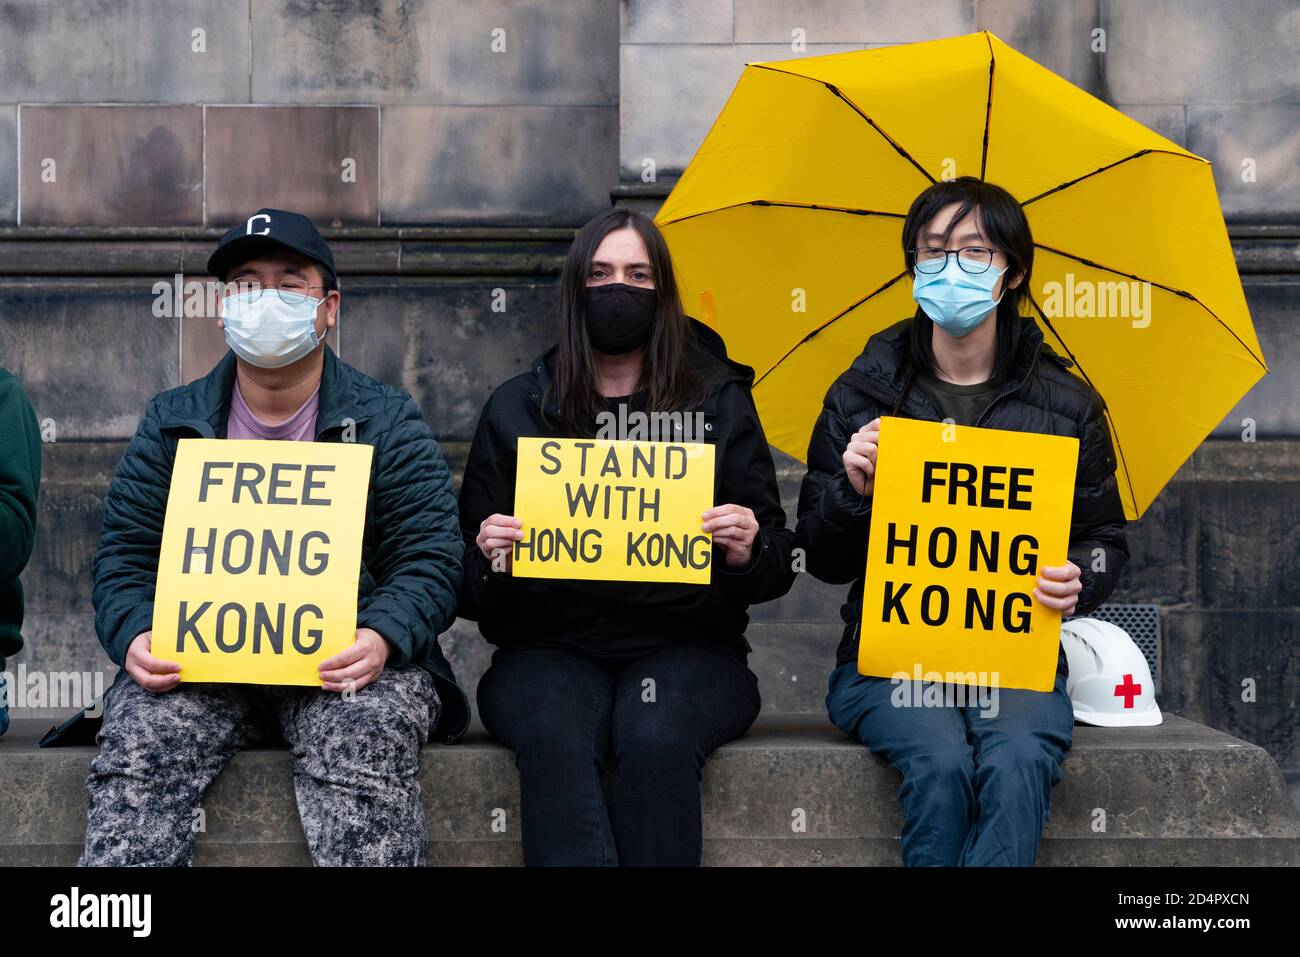 Edinburgh, Schottland, Großbritannien. 10. Oktober 2020. Demonstranten der Pro-Demokratie-Bewegung Hongkongs veranstalteten heute eine Demonstration in der St. Giles Kathedrale. Die Demonstranten protestierten gegen Chinas Verfolgung der ethnischen Minderheit der Uiguren und die neuen nationalen Sicherheitsgesetze, die Hongkong von China auferlegt wurden. Die Demonstranten trugen Gesichtszüge nicht nur als Gesundheitsvorsorge, sondern auch zur Wahrung der Anonymität.das nationale Sicherheitsgesetz bedeutet, dass Hongkonger Staatsangehörige wegen Protestes überall auf der Welt verfolgt werden können. Ein chinesisches Ehepaar aus dem Festland in einer Wohnung gegenüber zerrte die Demonstranten und filmte sie. Stockfoto